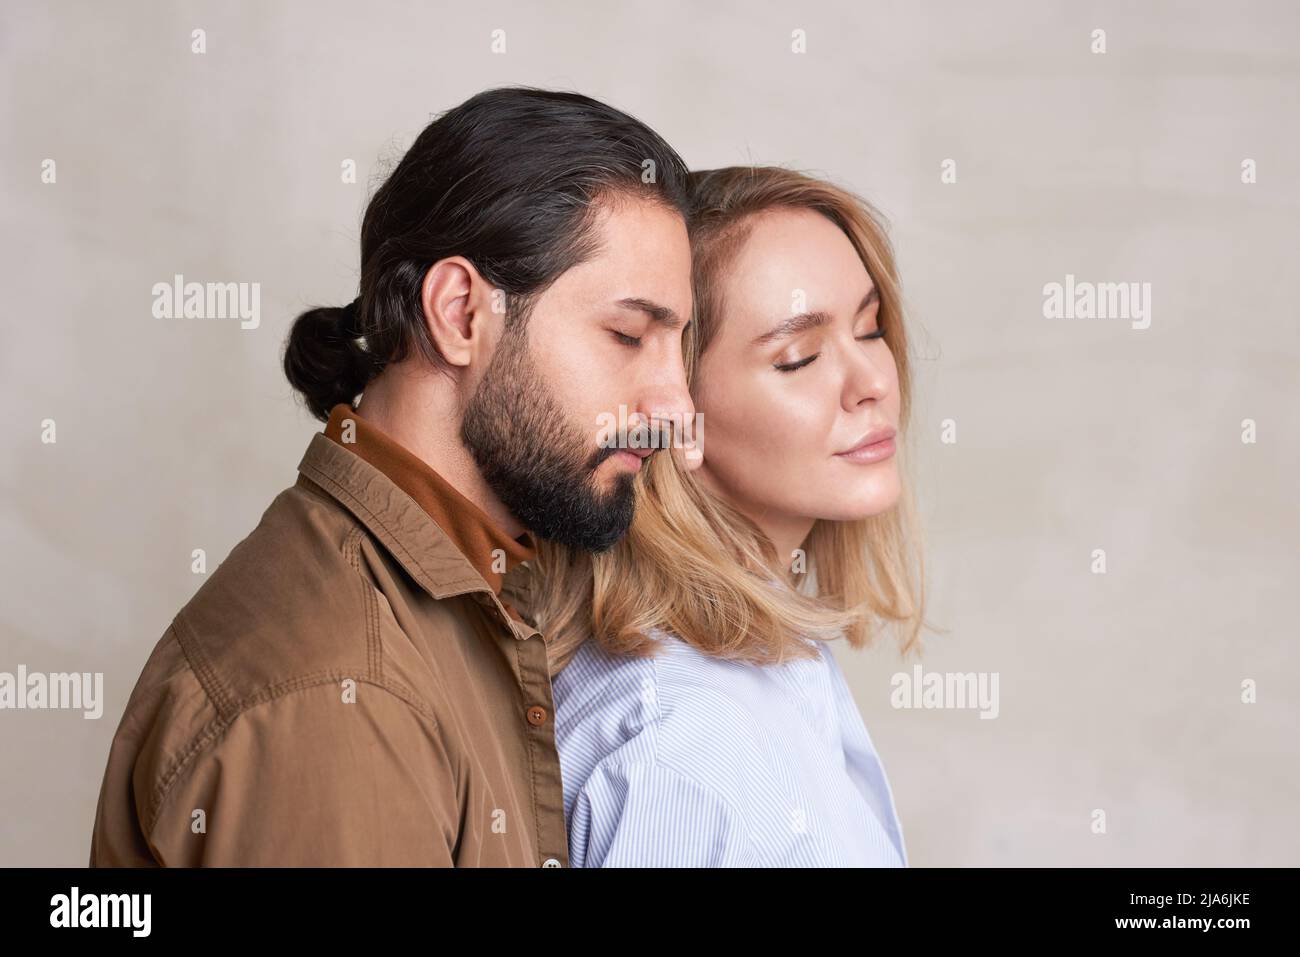 Mittleres Nahaufnahme-Studioporträt von schönen verliebten jungen Menschen, die nahe beieinander stehen, mit geschlossenen Augen, Kopierraum Stockfoto